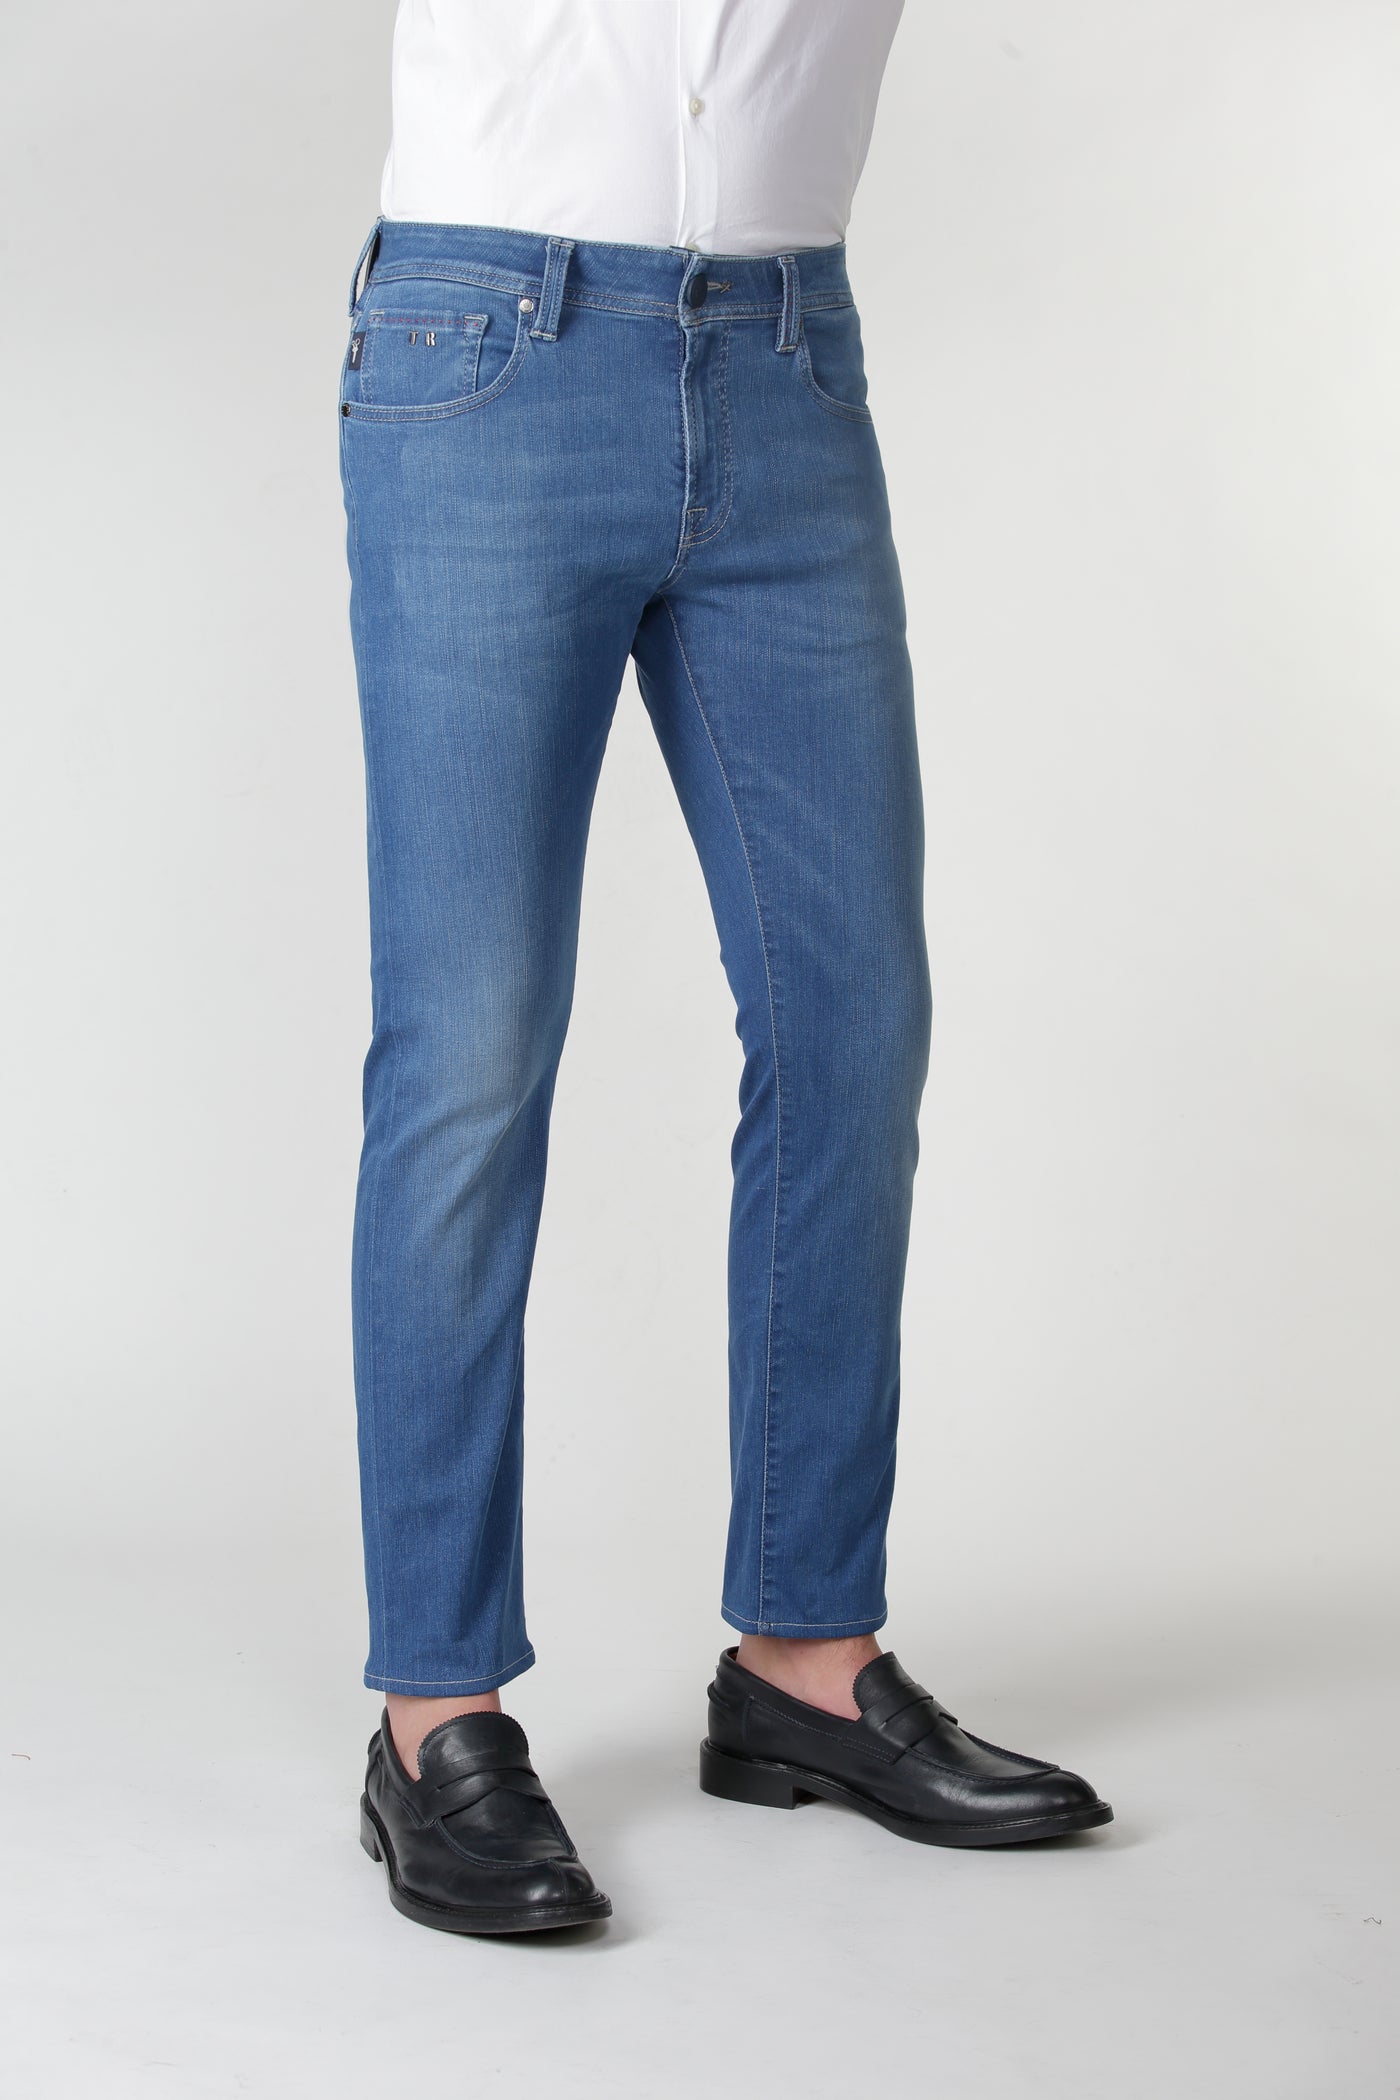 Tramarossa Jeans - SUPERSTRETCH DENIM - Model: MICHELANGELO SLIM